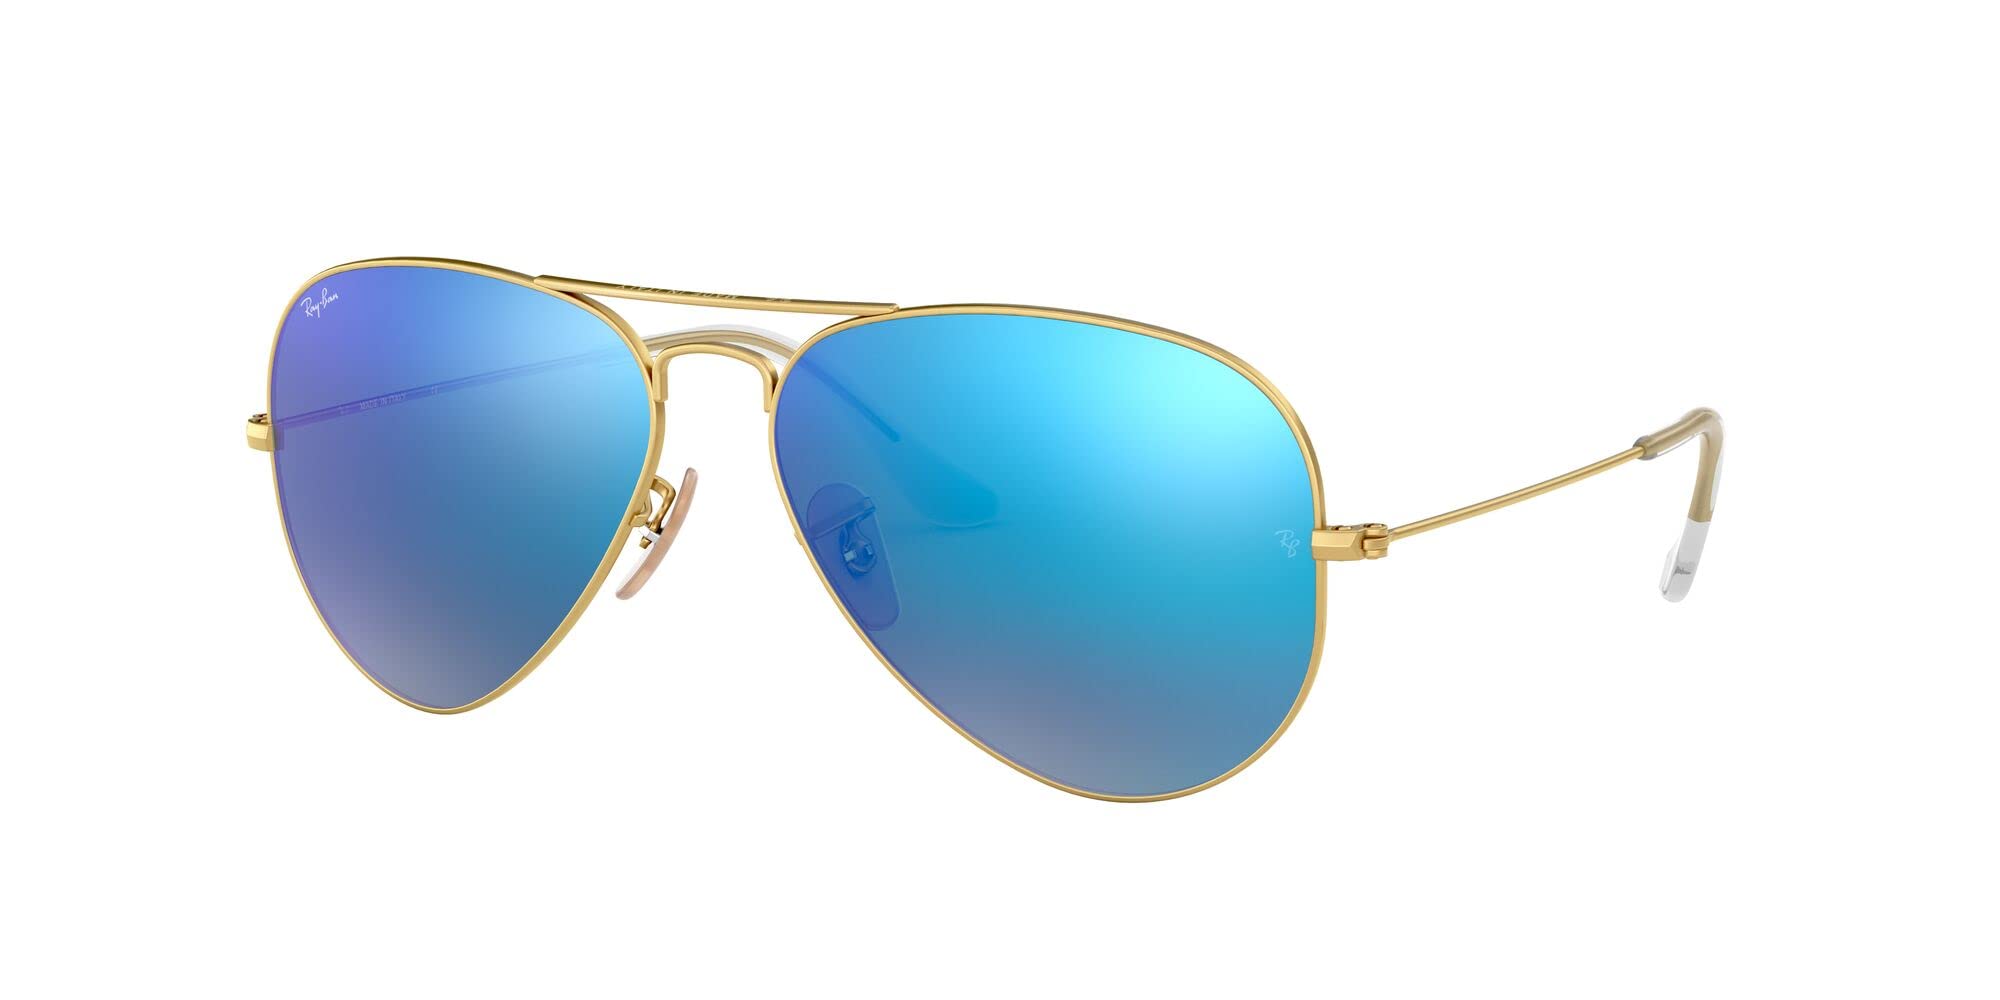 Ray-Ban Women's RB3025 Classic Mirrored Aviator Sunglasses